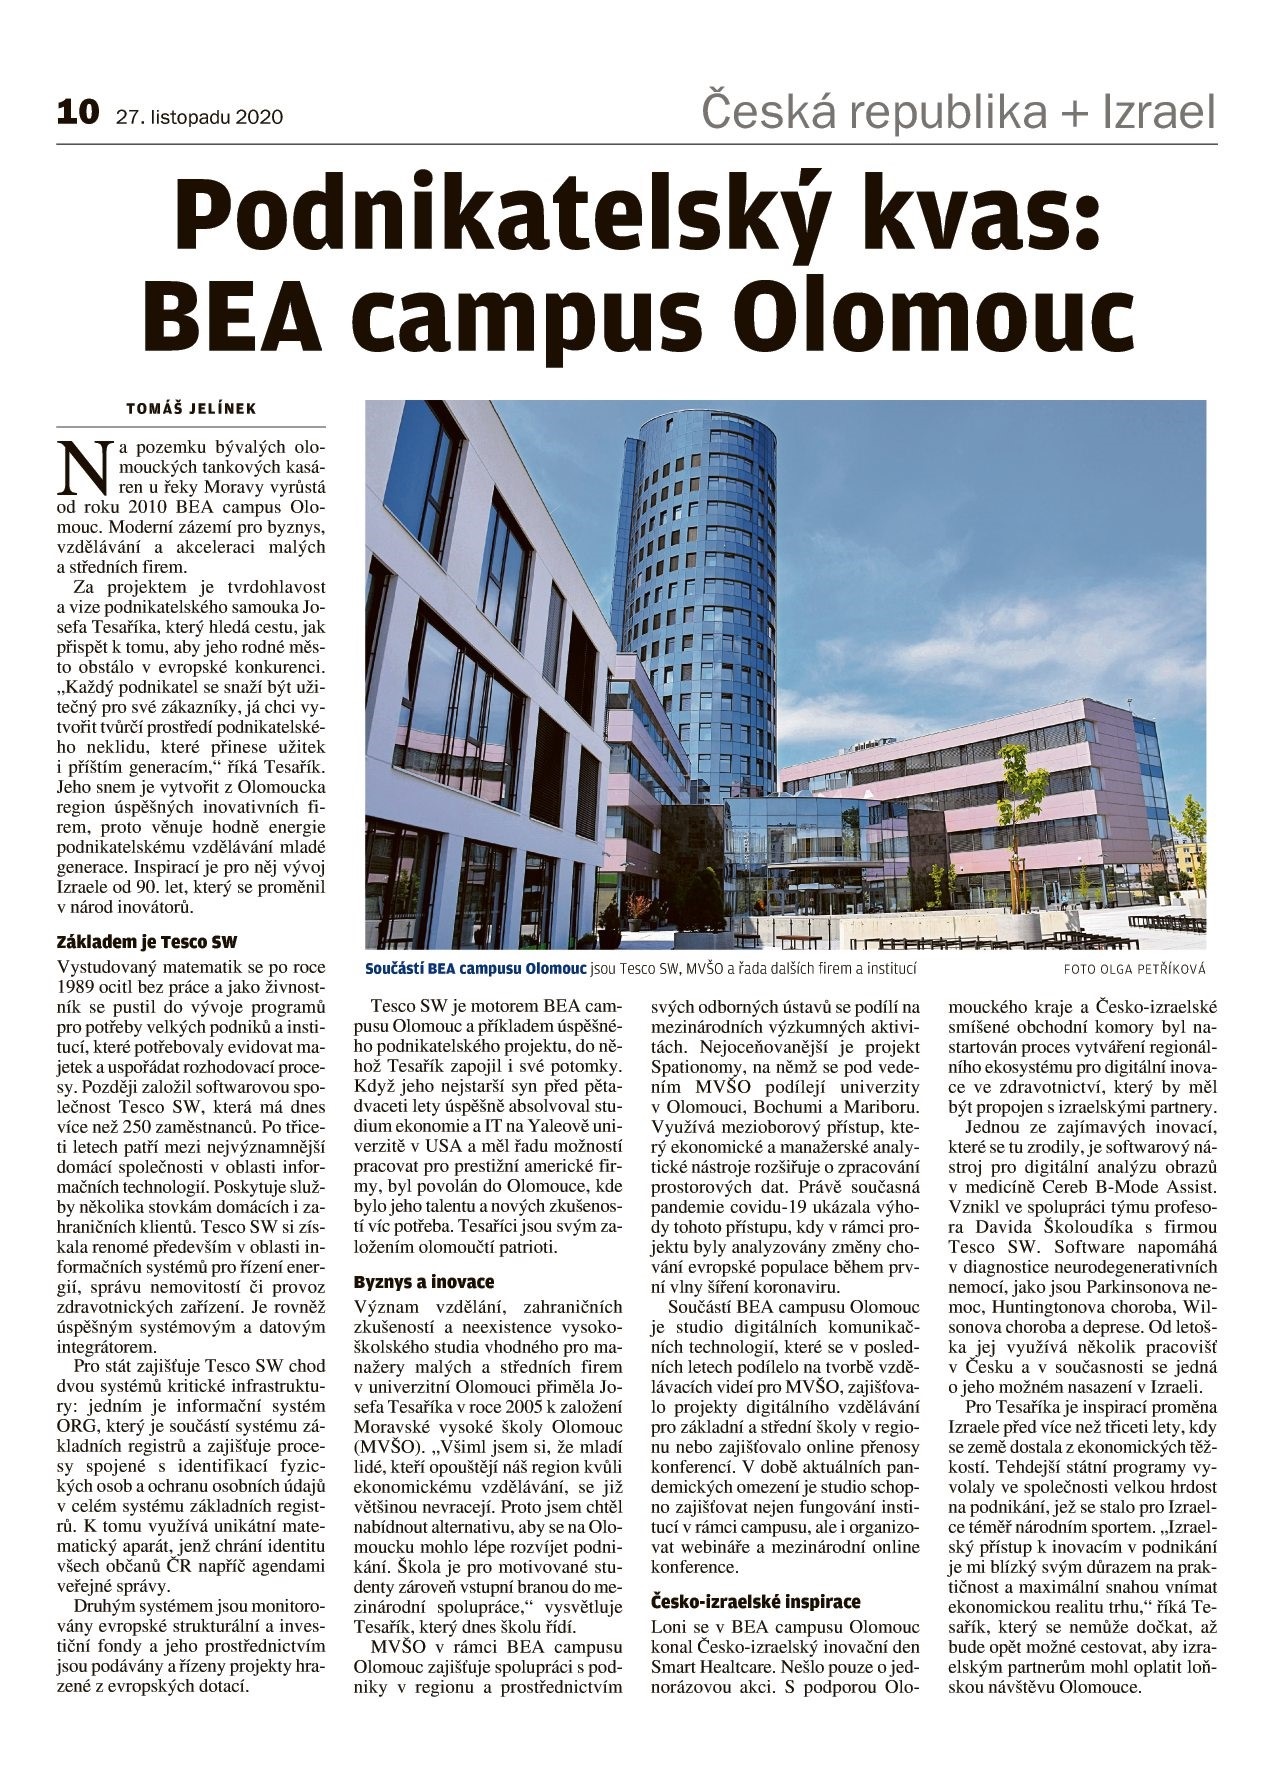 BEA campus Olomouc. Místo podnikatelského kvasu